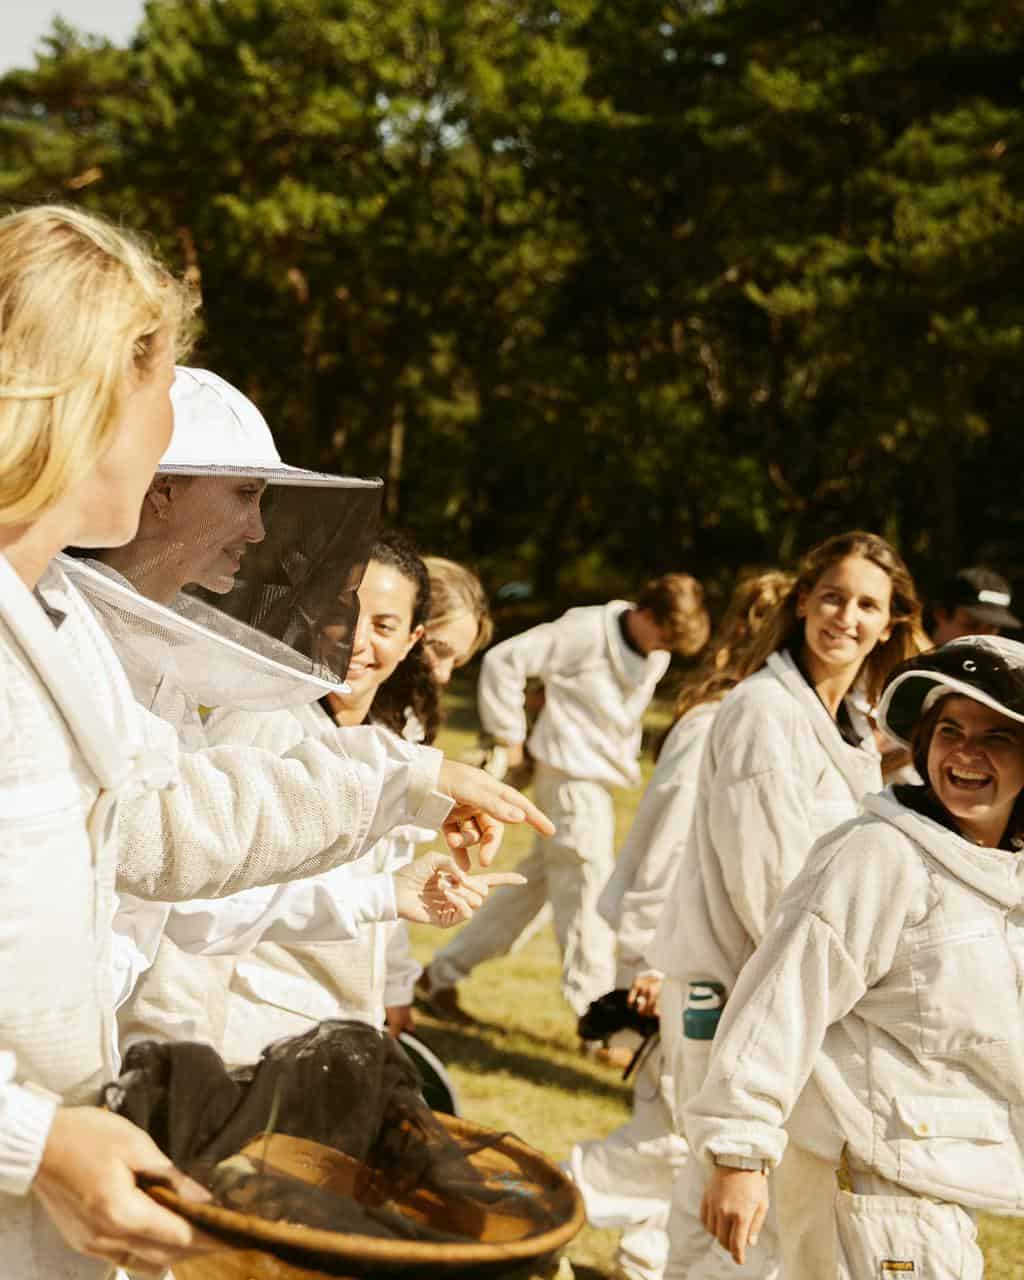 ქალთა პირველი კლასი, რომელიც დაამთავრა Guerlain X UNESCO-ს პროგრამა, რომელიც აერთიანებს ქალთა მეწარმეობას ფუტკრის დაცვასთან.